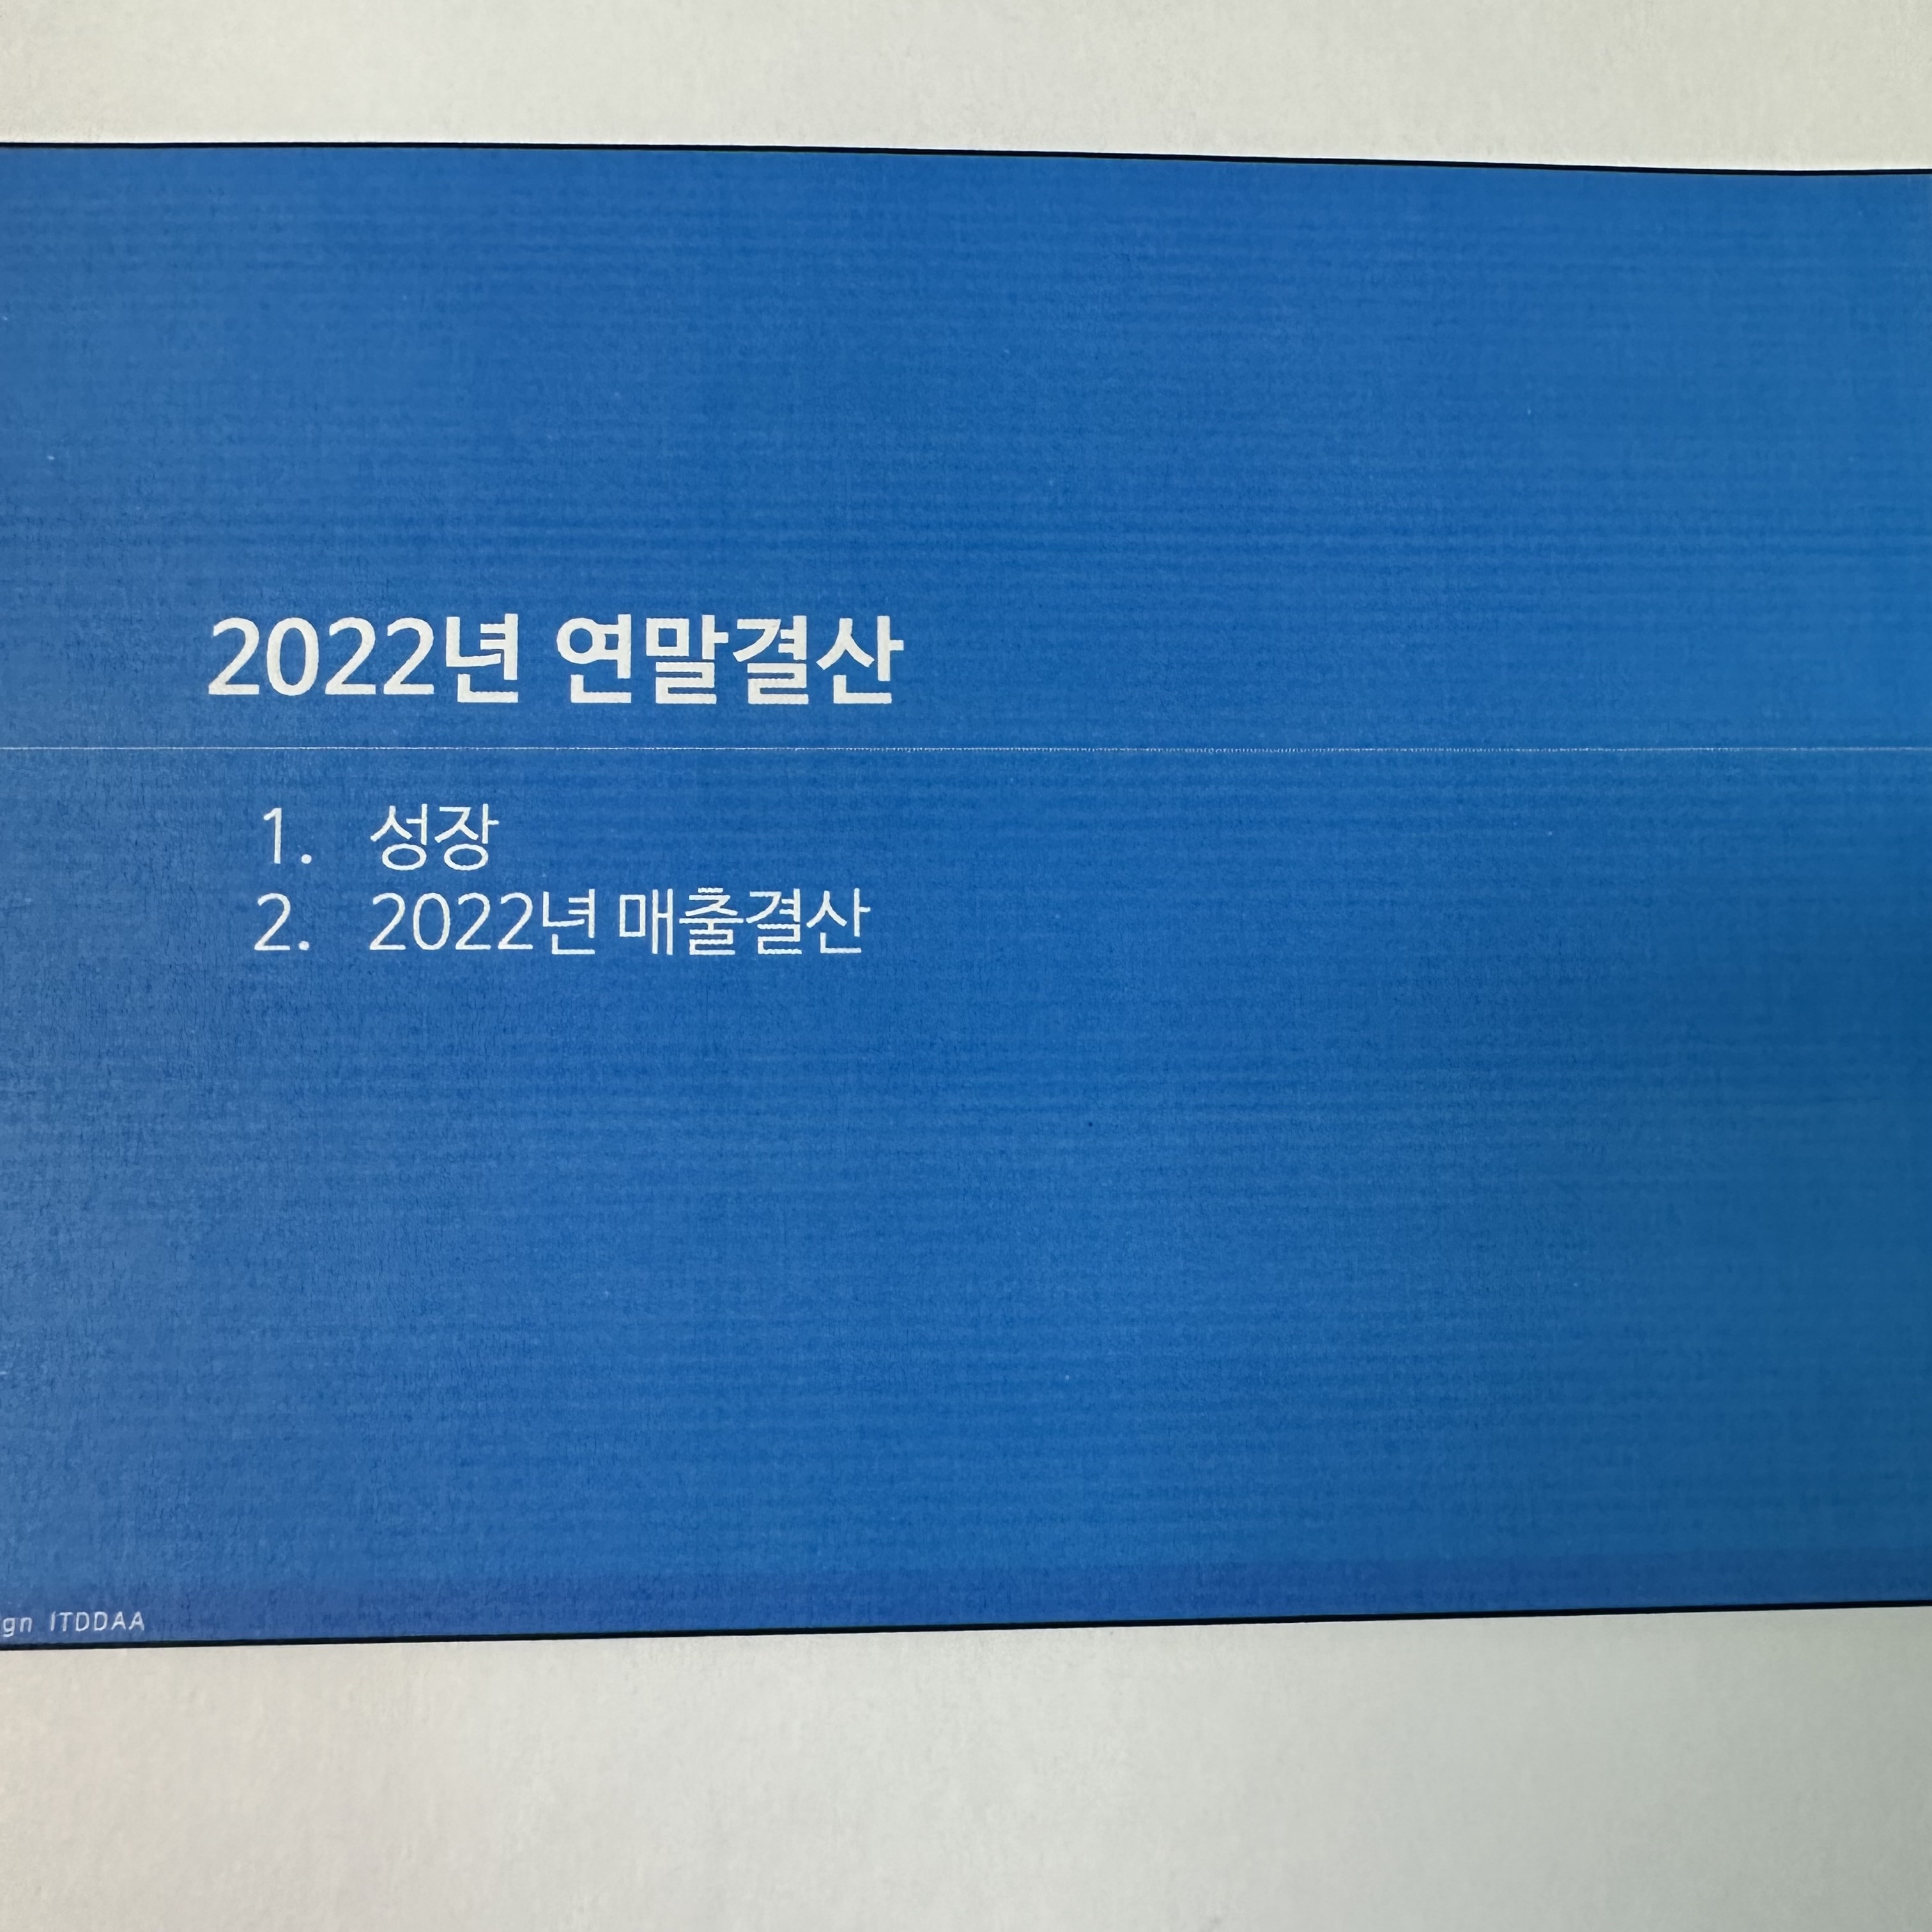 2022년 연말결산